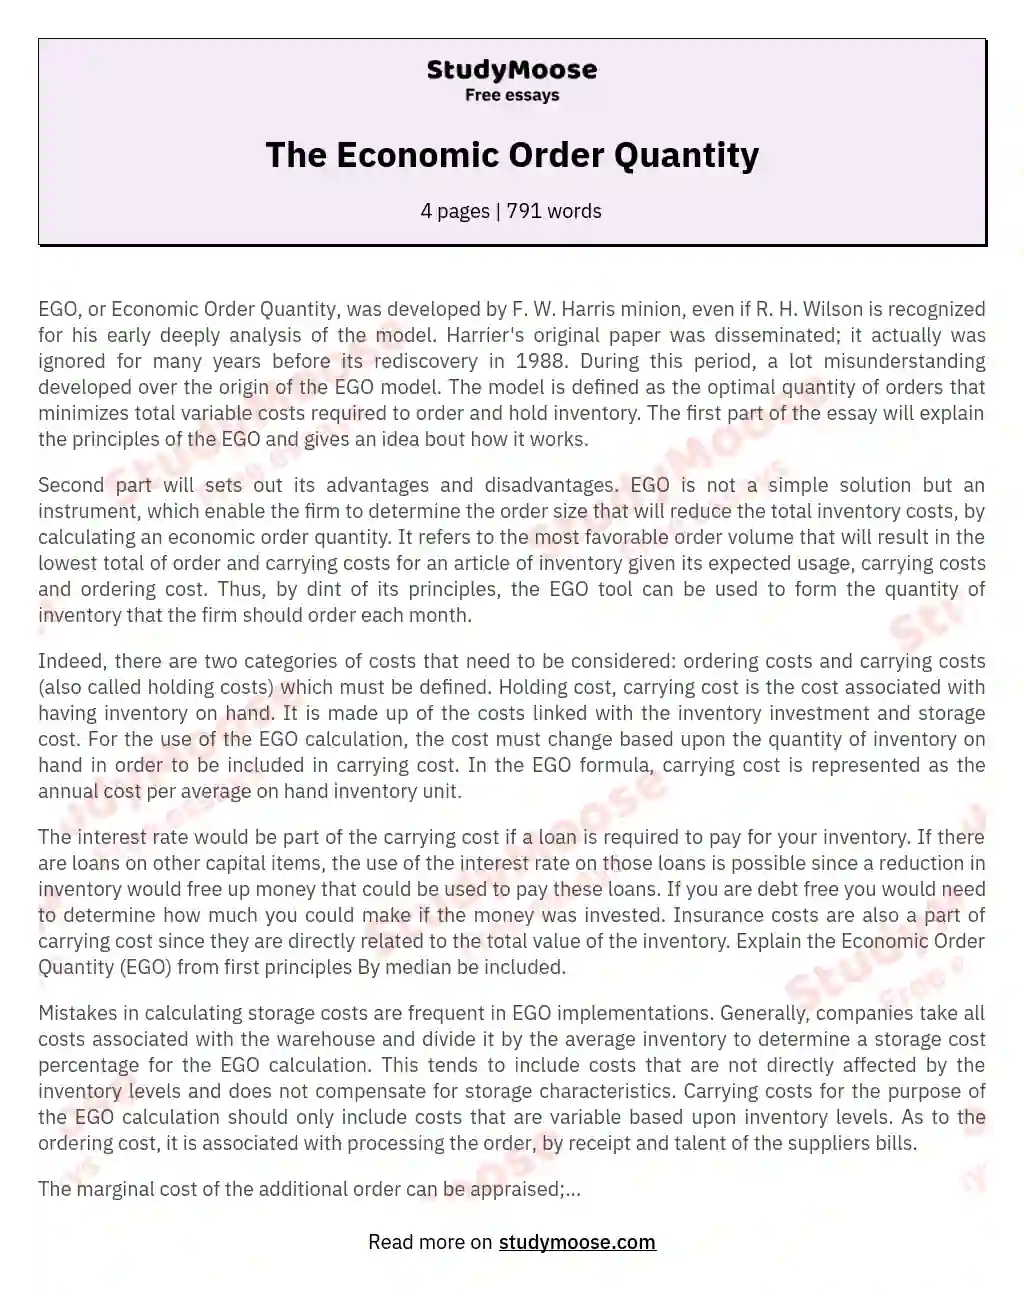 The Economic Order Quantity essay